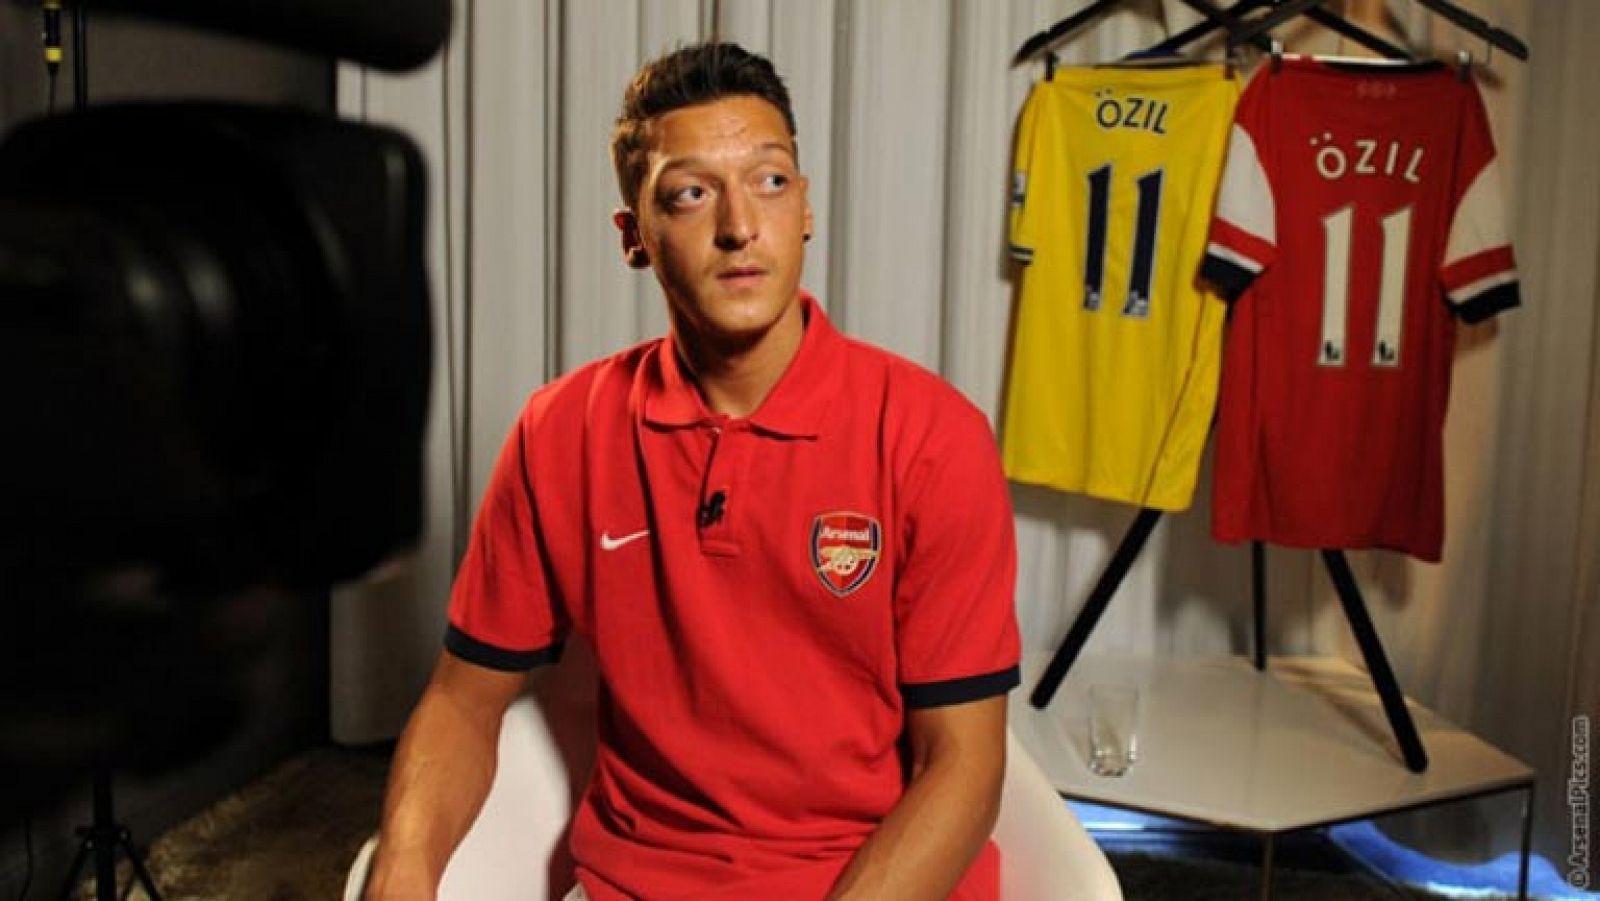  El nuevo fichaje de Arsenal, Mesut Özil, ha hecho un parón con la selección alemana para ponerse por primera vez la camiseta de su nuevo equipo para una sesión fotográfica.